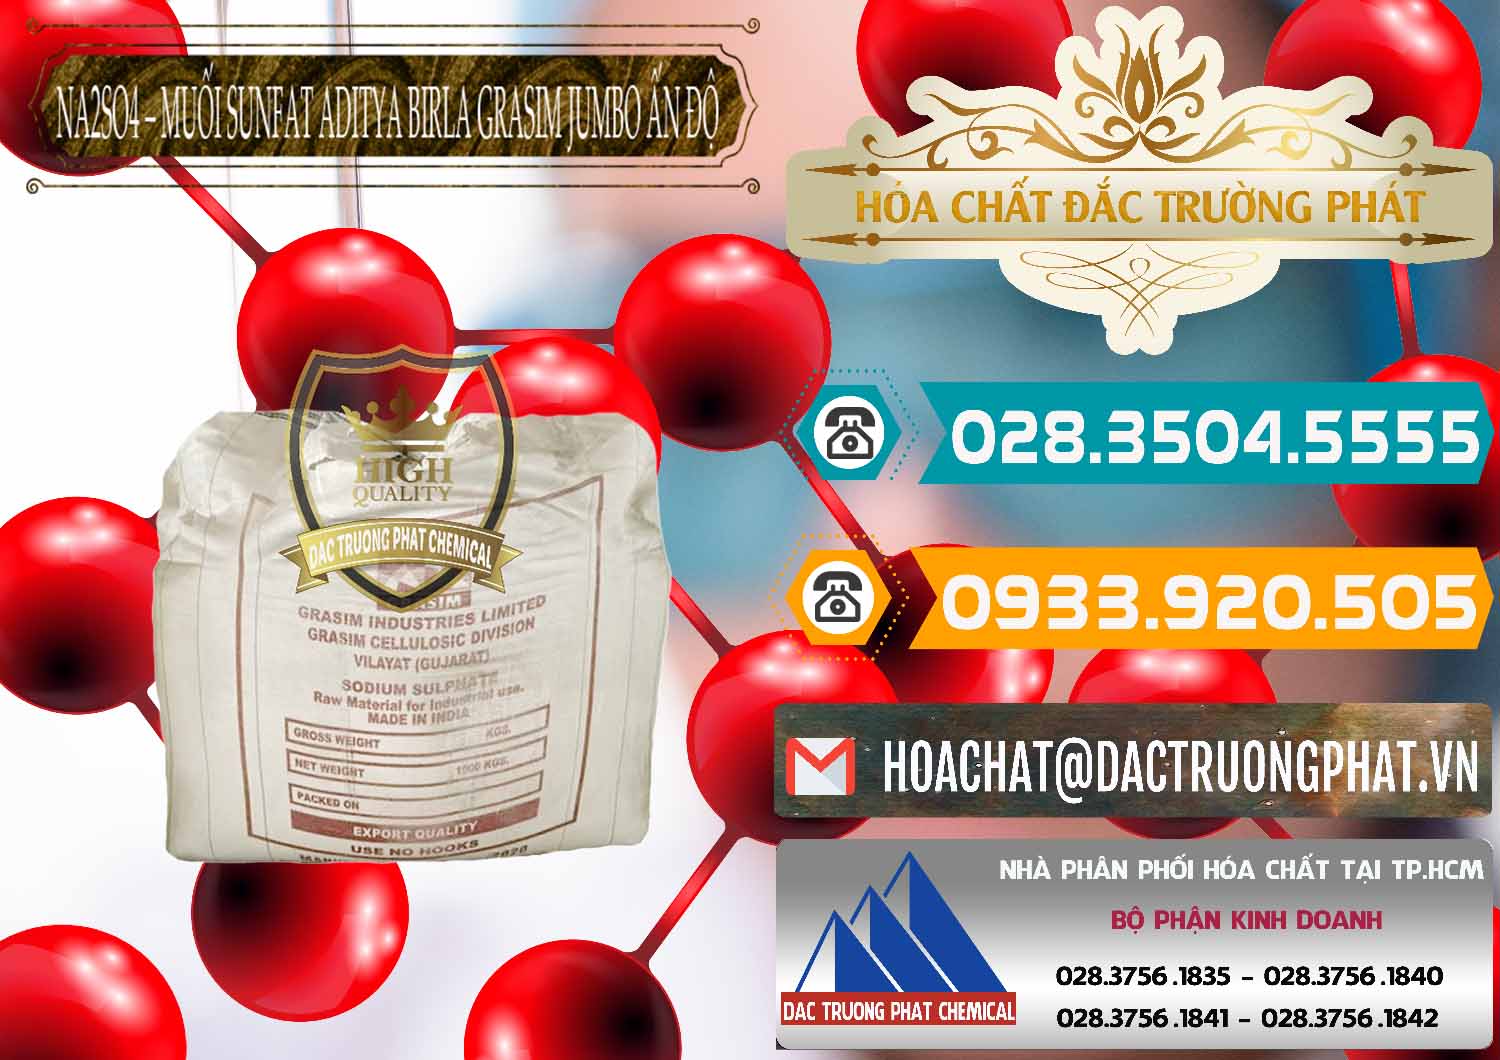 Nơi bán ( cung cấp ) Sodium Sulphate - Muối Sunfat Na2SO4 Jumbo Bành Aditya Birla Grasim Ấn Độ India - 0357 - Cty chuyên bán _ cung cấp hóa chất tại TP.HCM - congtyhoachat.vn